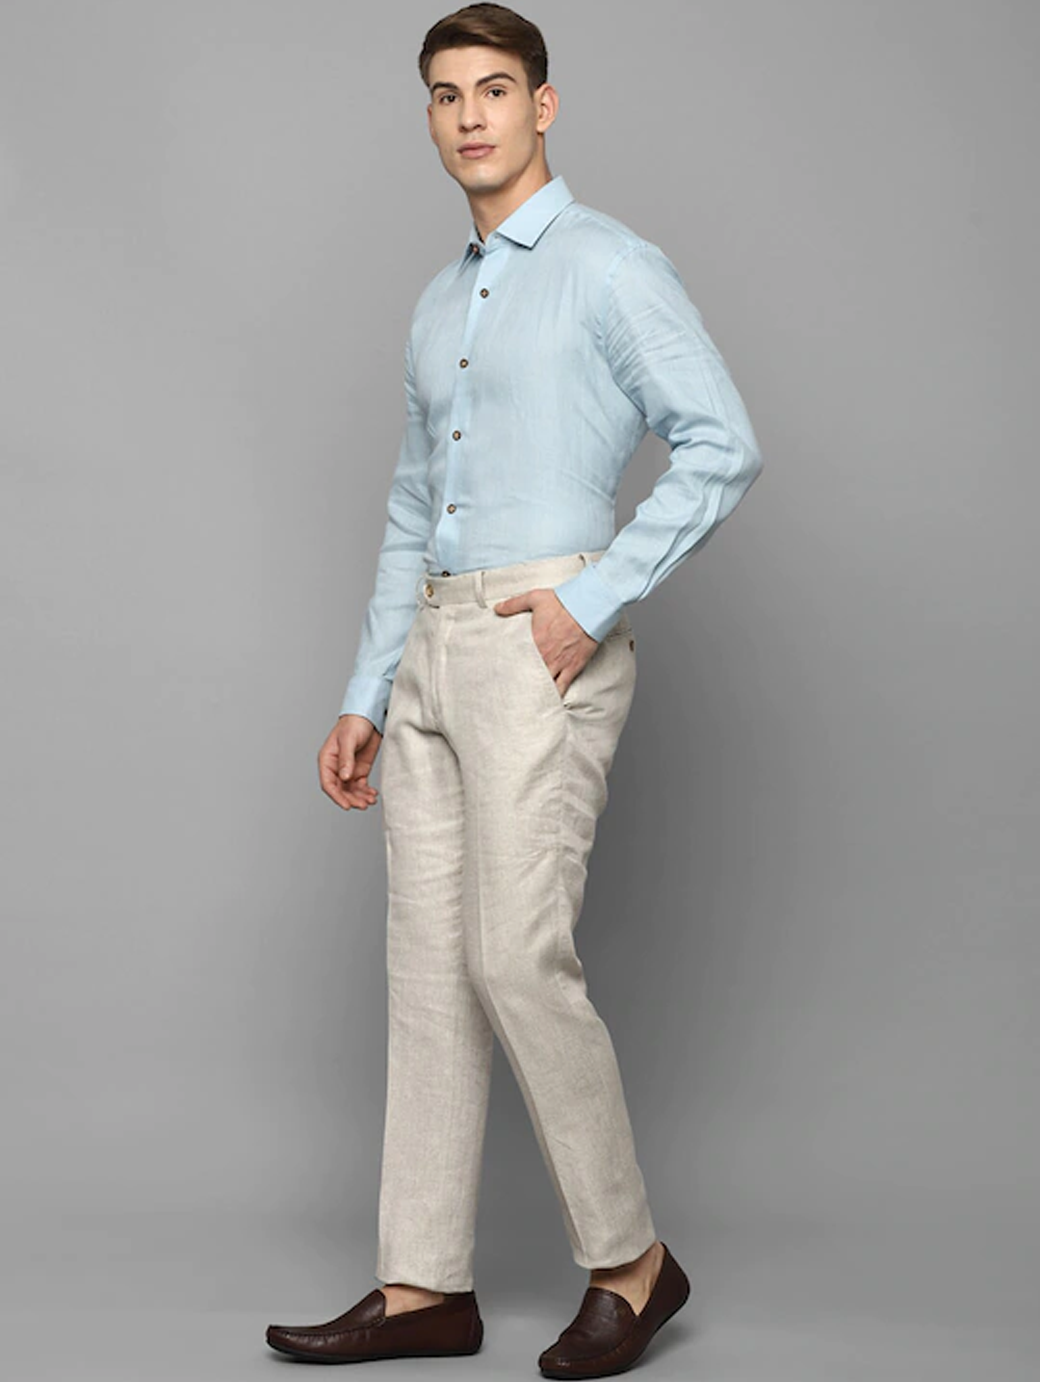 Buy Navy Blue Trousers  Pants for Women by LABEL RITU KUMAR Online   Ajiocom